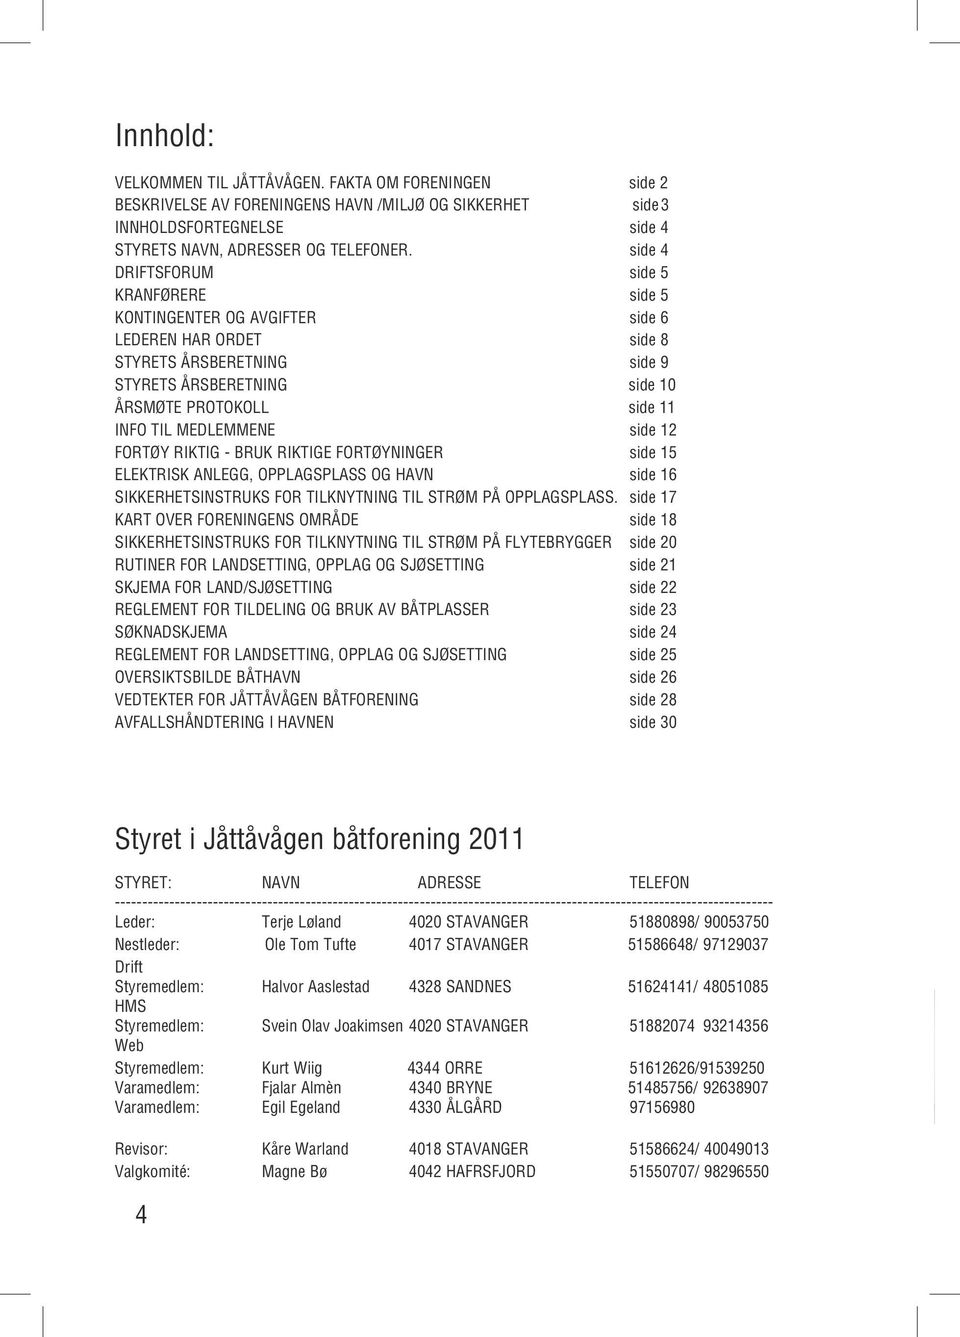 MEDLEMMENE side 12 FORTØY RIKTIG - BRUK RIKTIGE FORTØYNINGER side 15 ELEKTRISK ANLEGG, OPPLAGSPLASS OG HAVN side 16 SIKKERHETSINSTRUKS FOR TILKNYTNING TIL STRØM PÅ OPPLAGSPLASS.